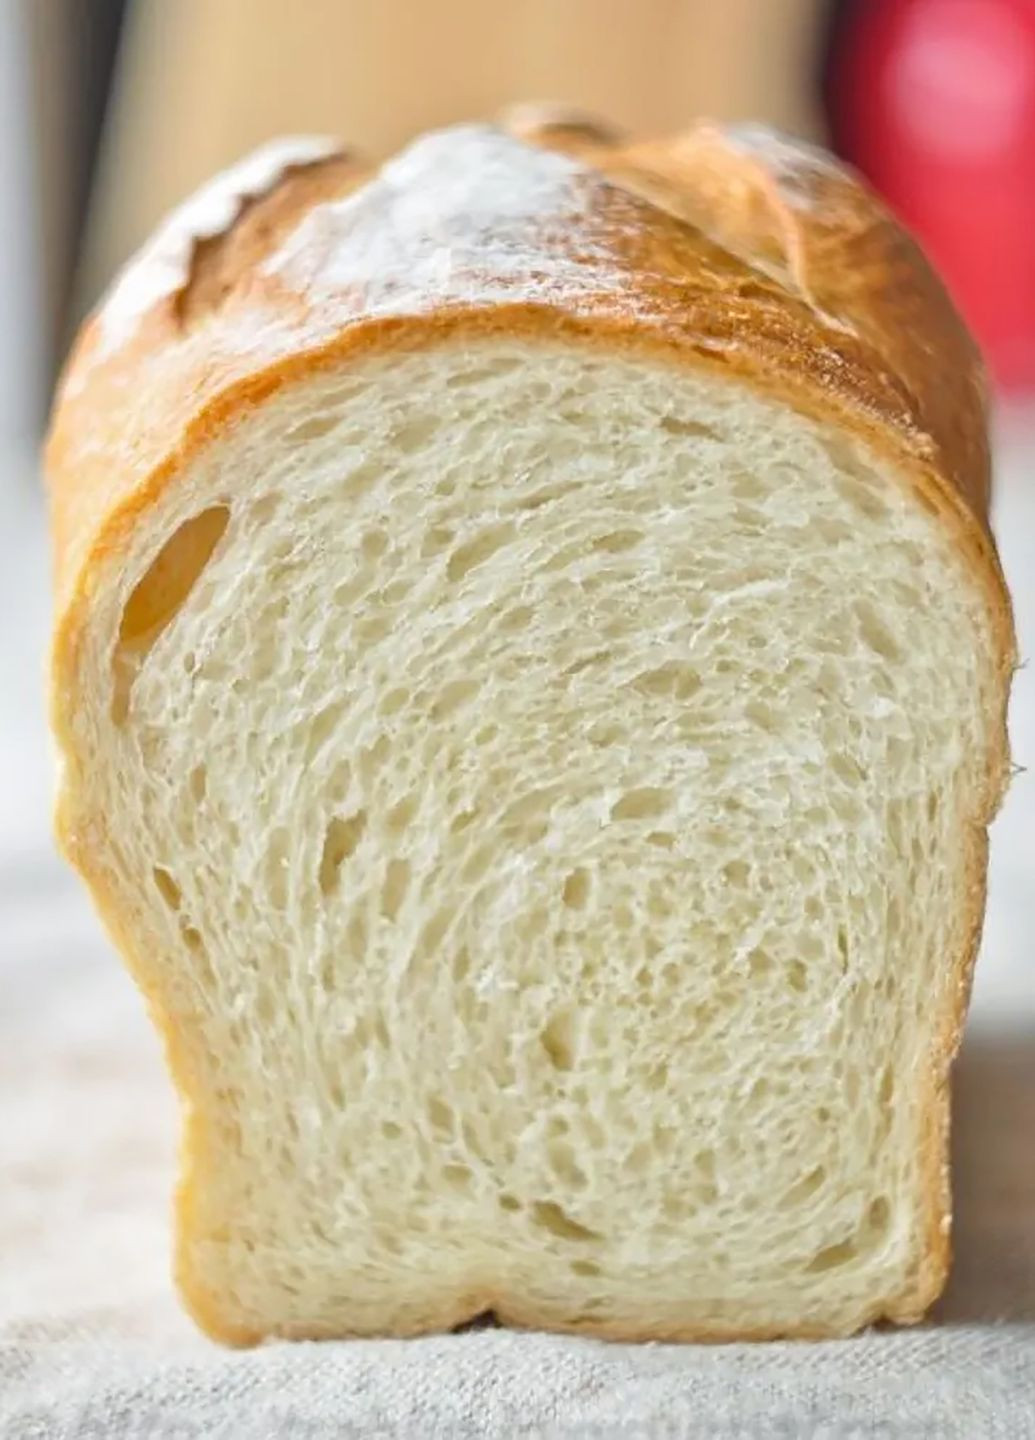 Набор из 4 хлебных форм алюминиевых для выпечки хлеба Л7 Л12 Л11 11Д Полімет (274060188)